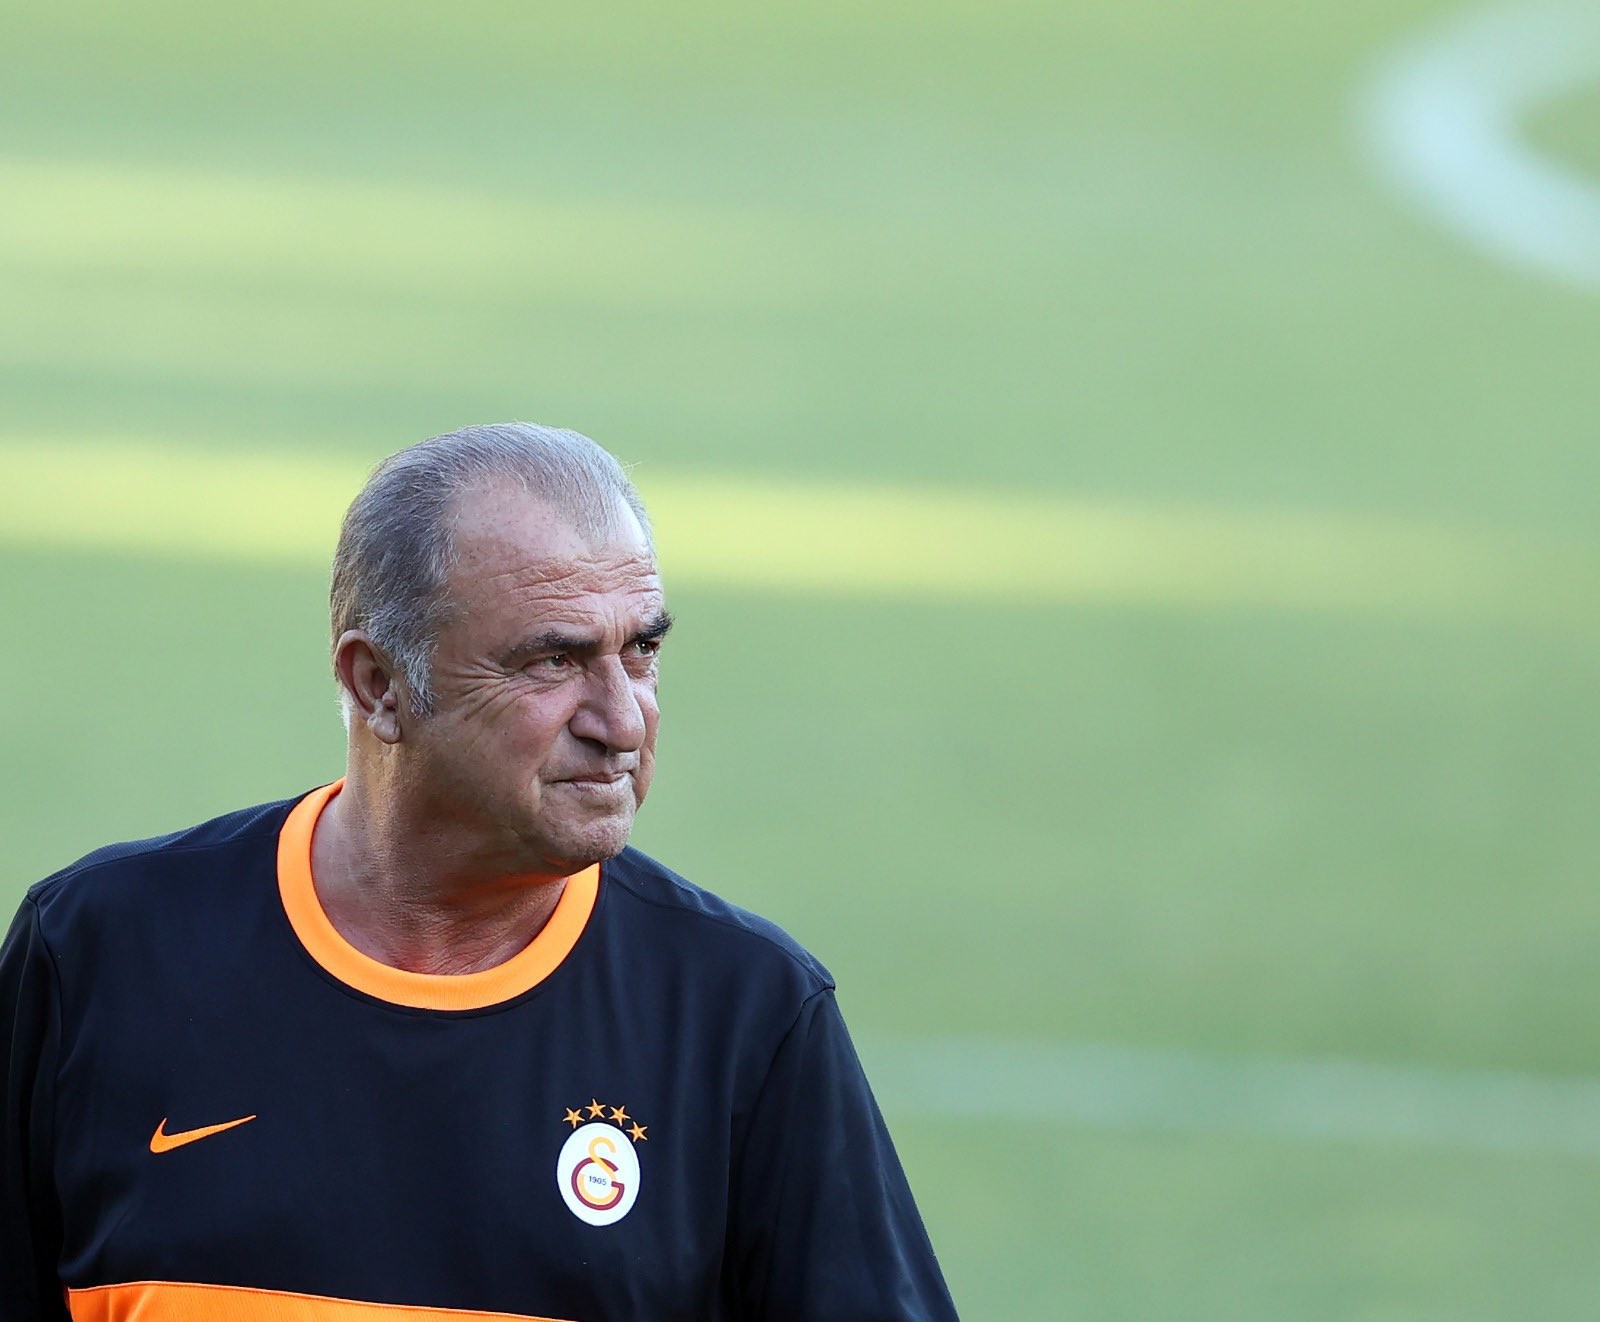 Son dakika spor haberleri: Galatasaray transfer çalışmalarını sürdürüyor! Marko Pjaca, Karim Hafez, Paulinho... | GS haberleri